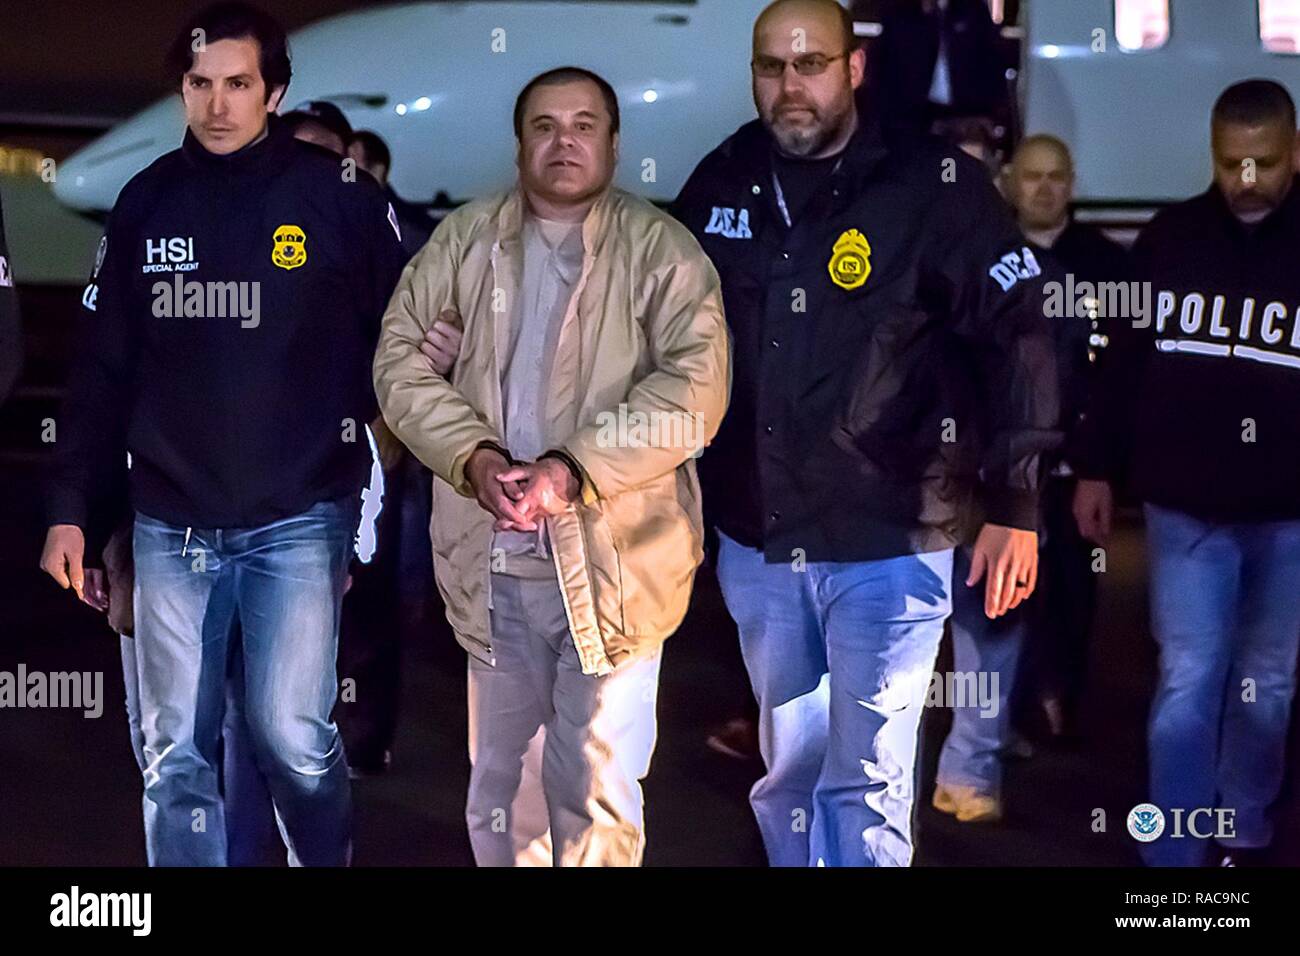 BROOKLYN, New York - les autorités fédérales ont annoncé vendredi que Archivaldo Joaquin Guzman Loera, connu sous divers pseudonymes dont, "El Chapo", feront face à des accusations déposées à Brooklyn, New York, après son extradition vers les États-Unis du Mexique. Guzman Loera est arrivé à New York tard jeudi sous forte escorte par des agents spéciaux avec le U.S. Immigration and Customs Enforcement (ICE) des enquêtes de la sécurité intérieure et de la Drug Enforcement Administration (DEA) et d'autres autorités. Banque D'Images